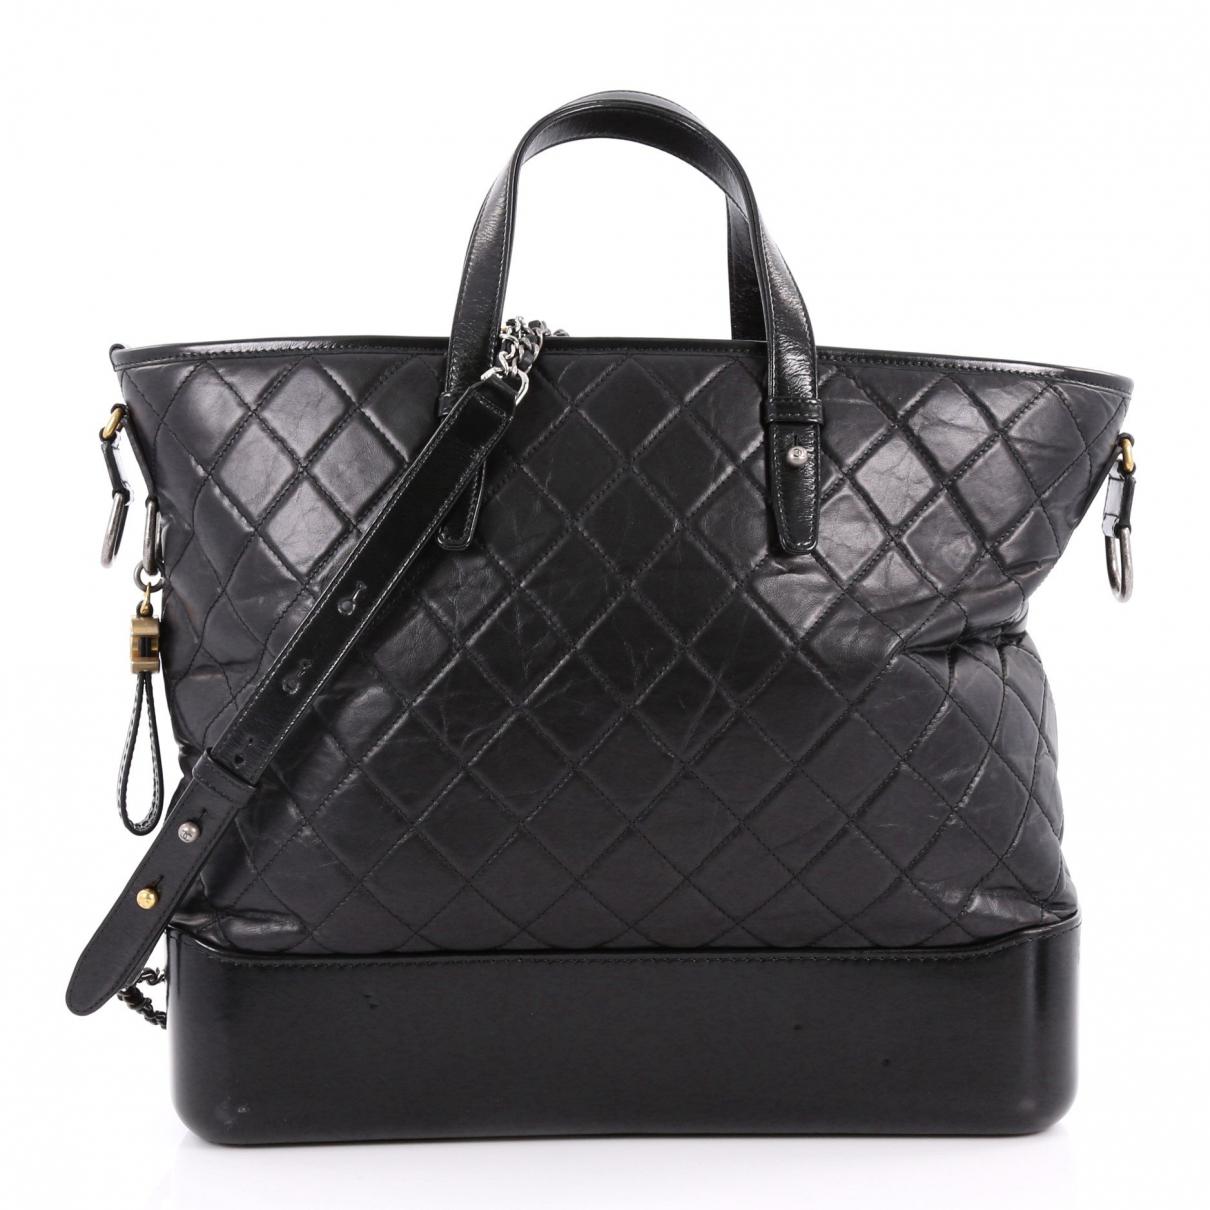 Chanel Gabrielle Leather Crossbody Bag in Black - Lyst